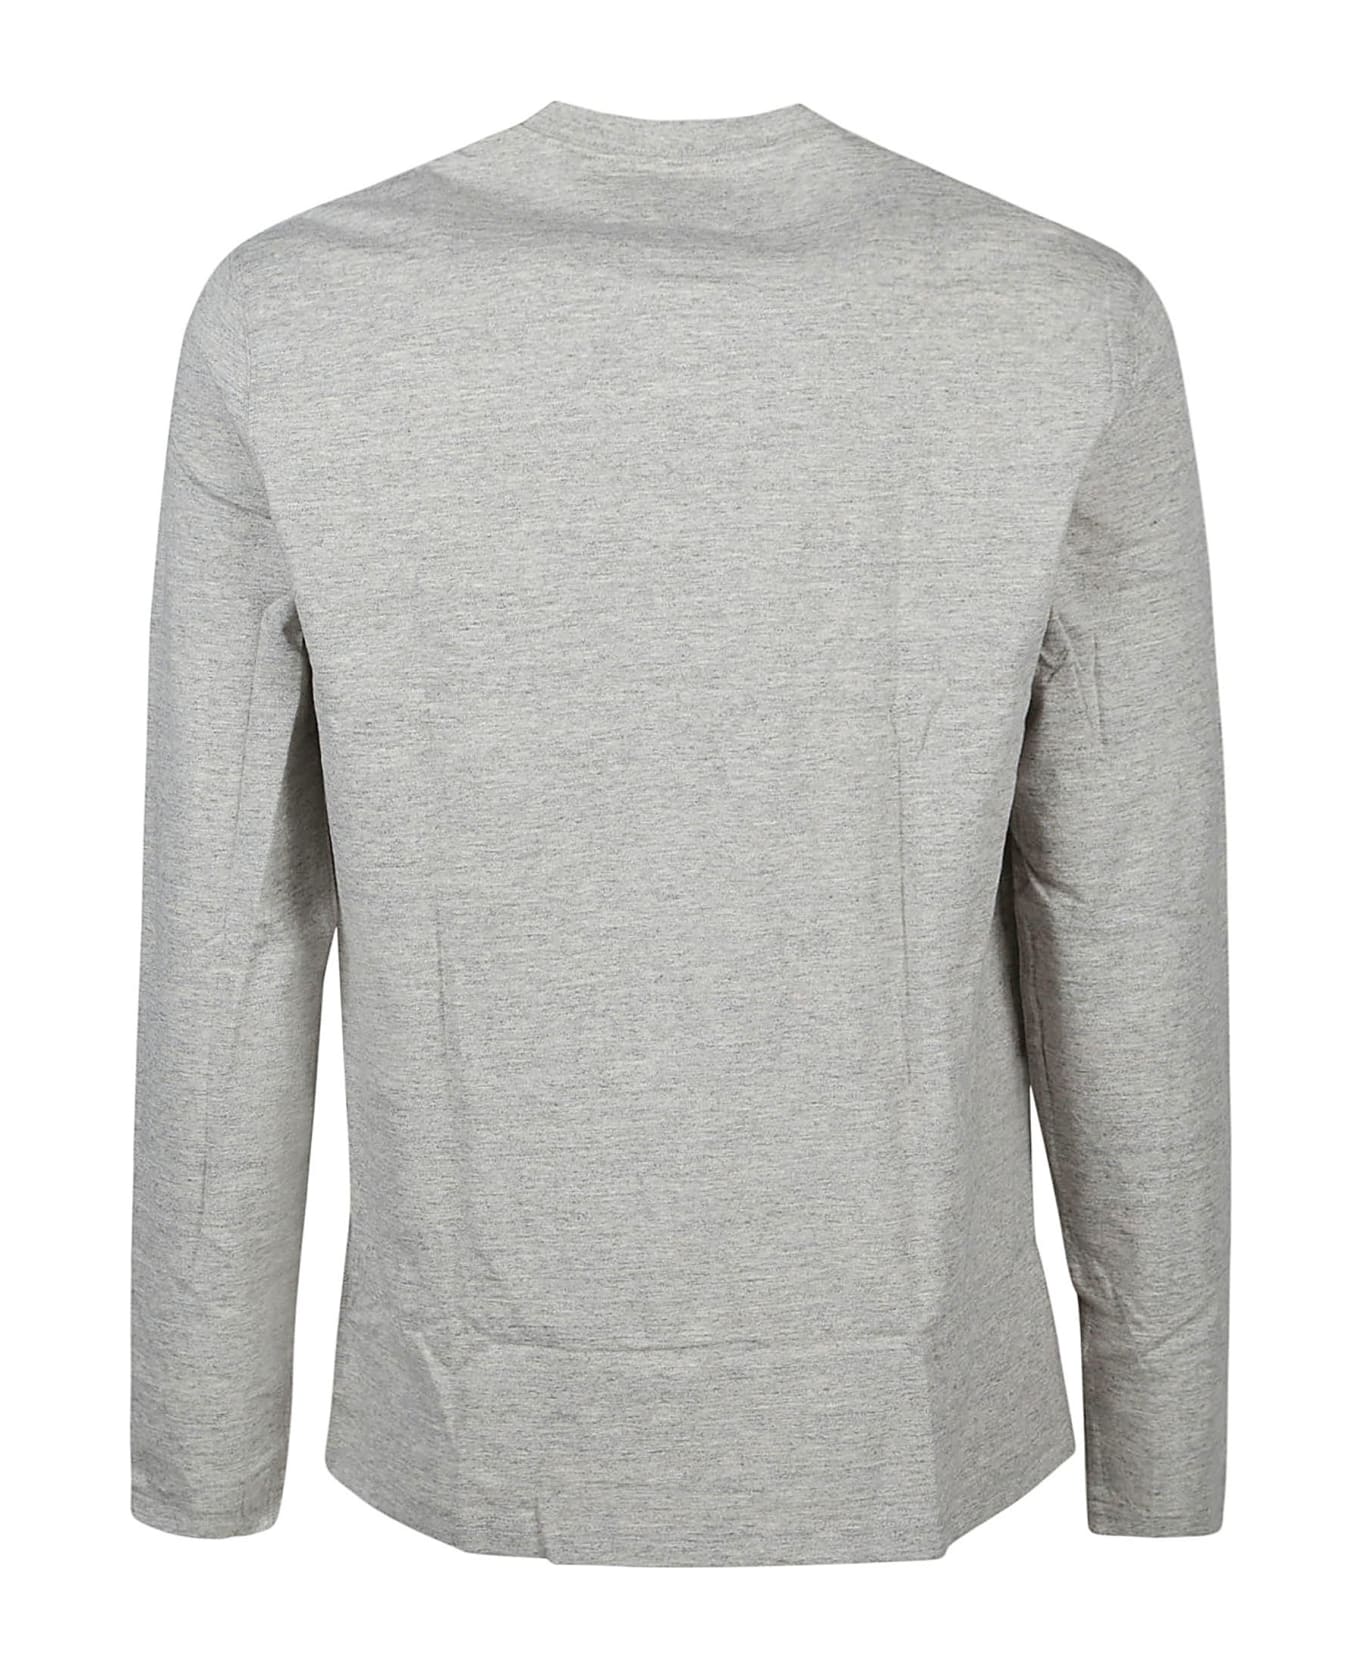 Polo Ralph Lauren Long Sleeve T-shirt - Loft Heather